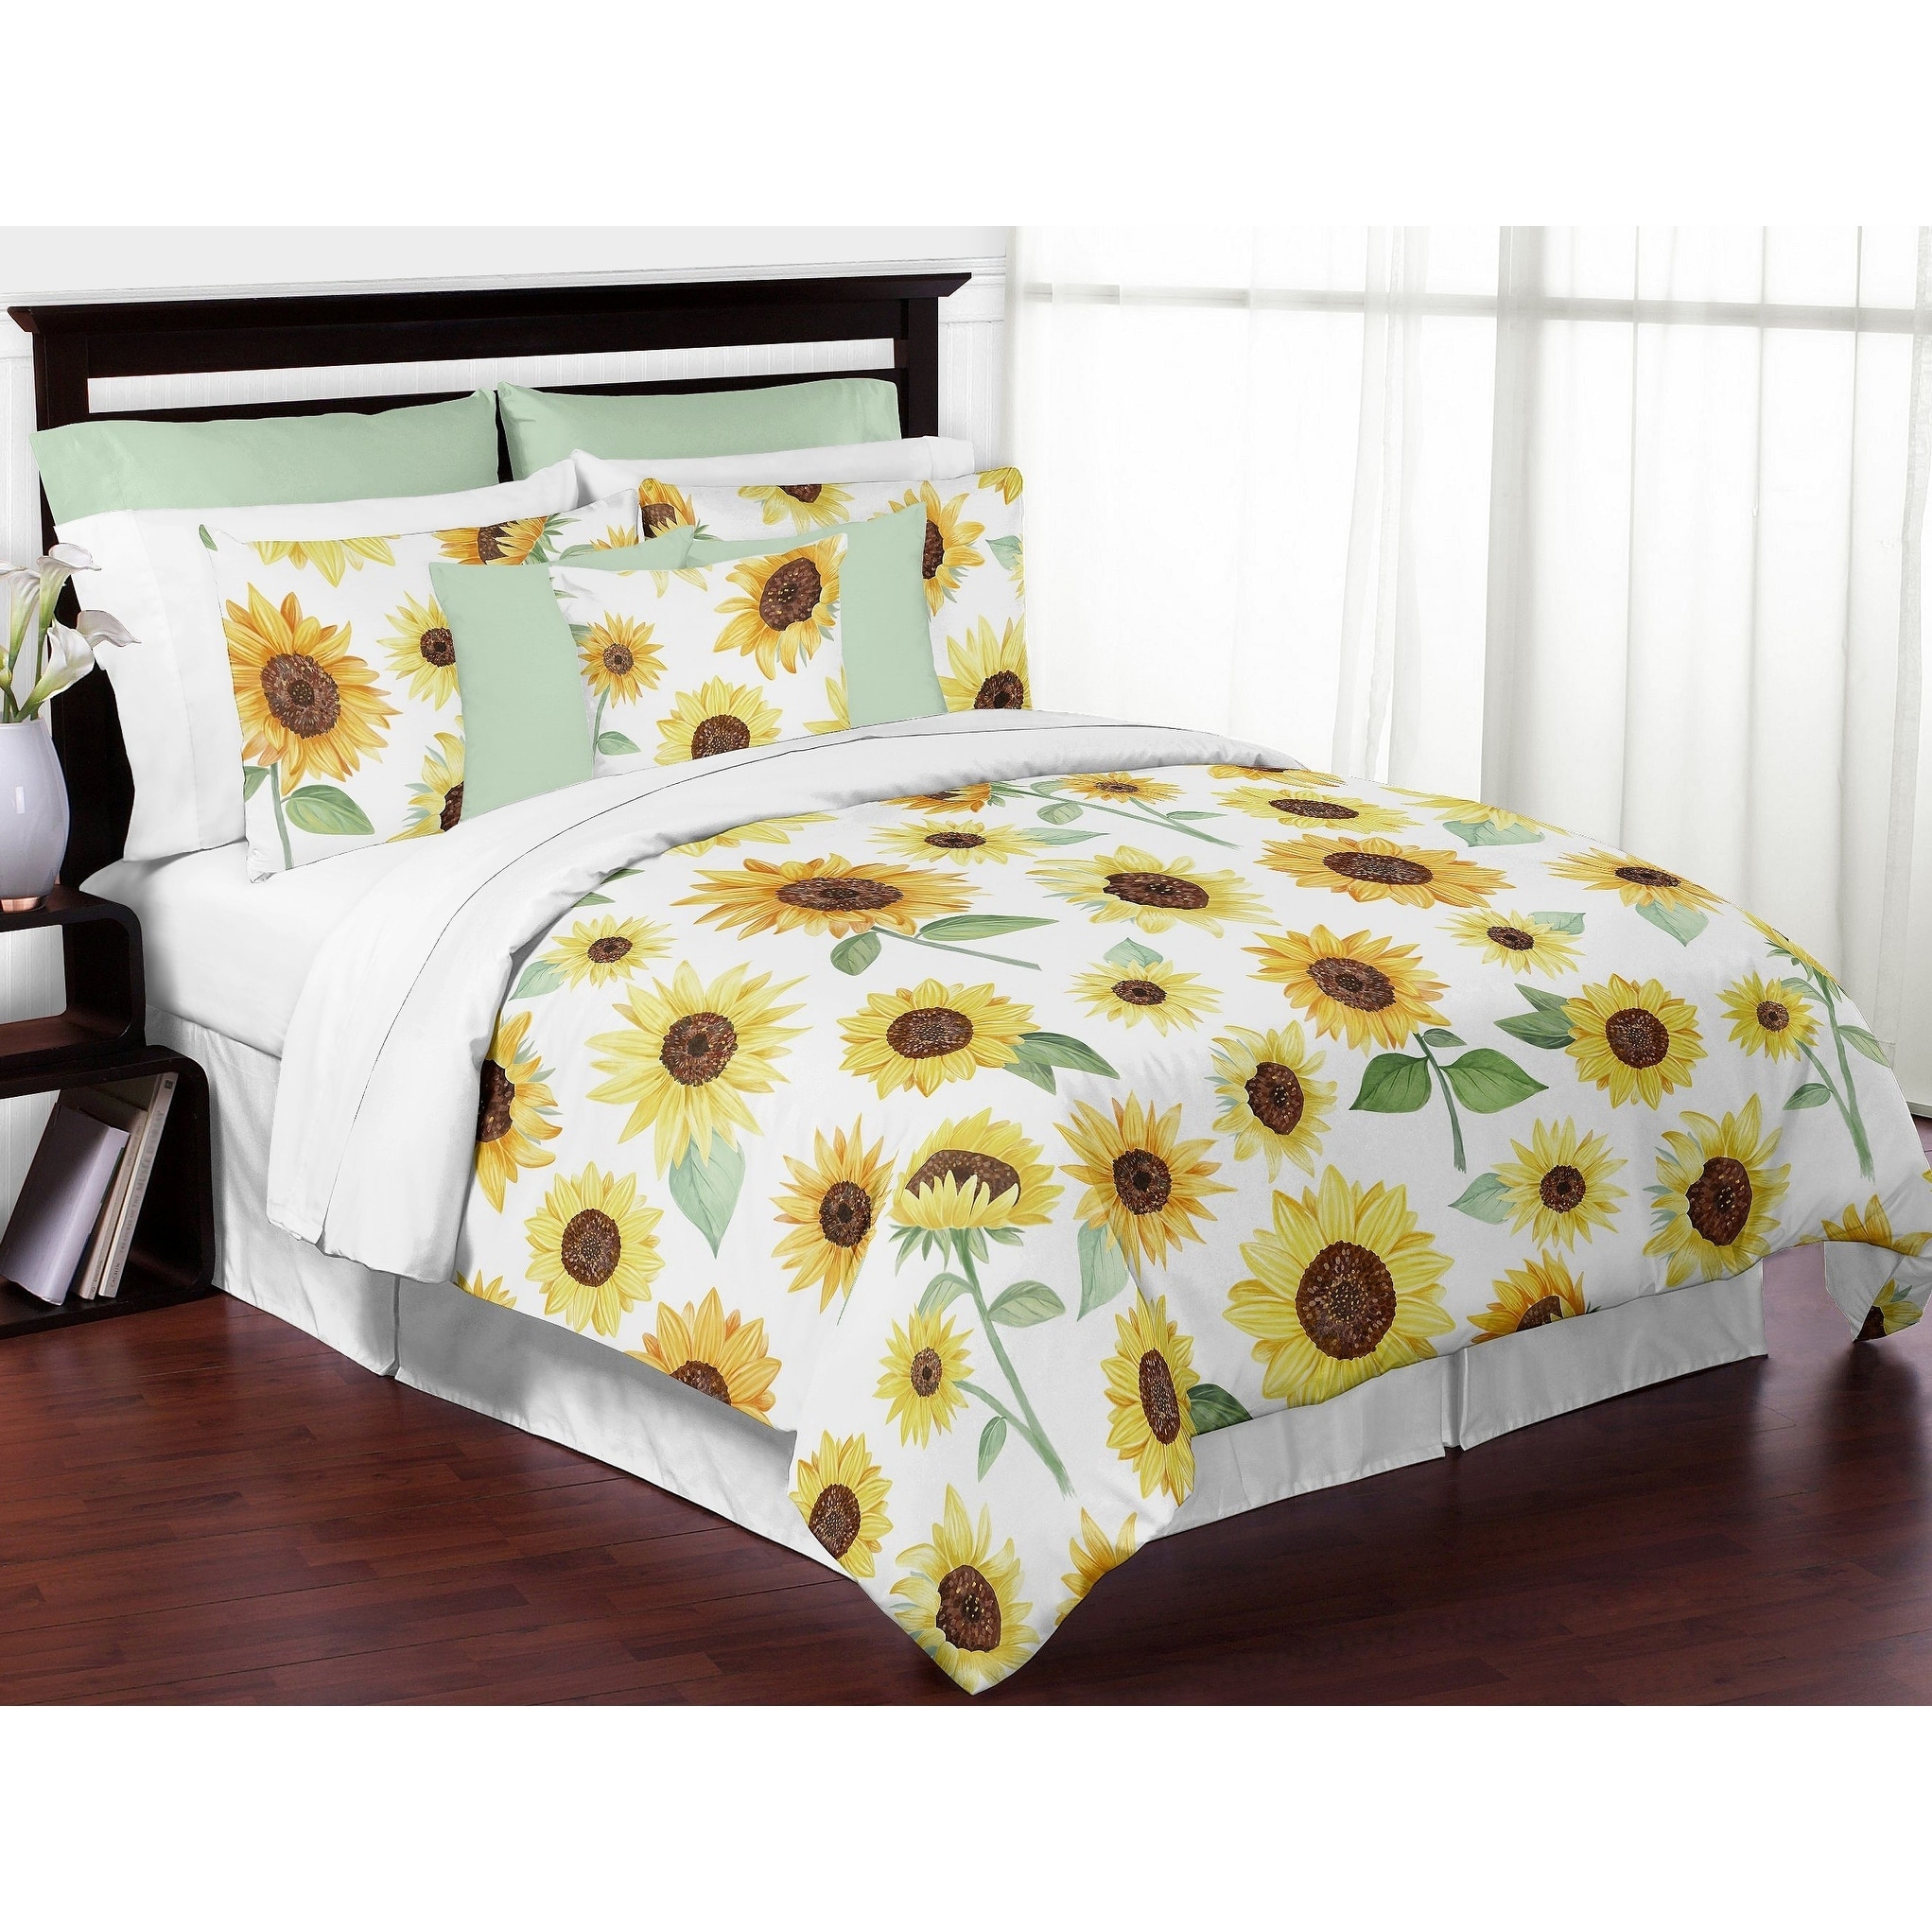 queen size bed comforter sets target